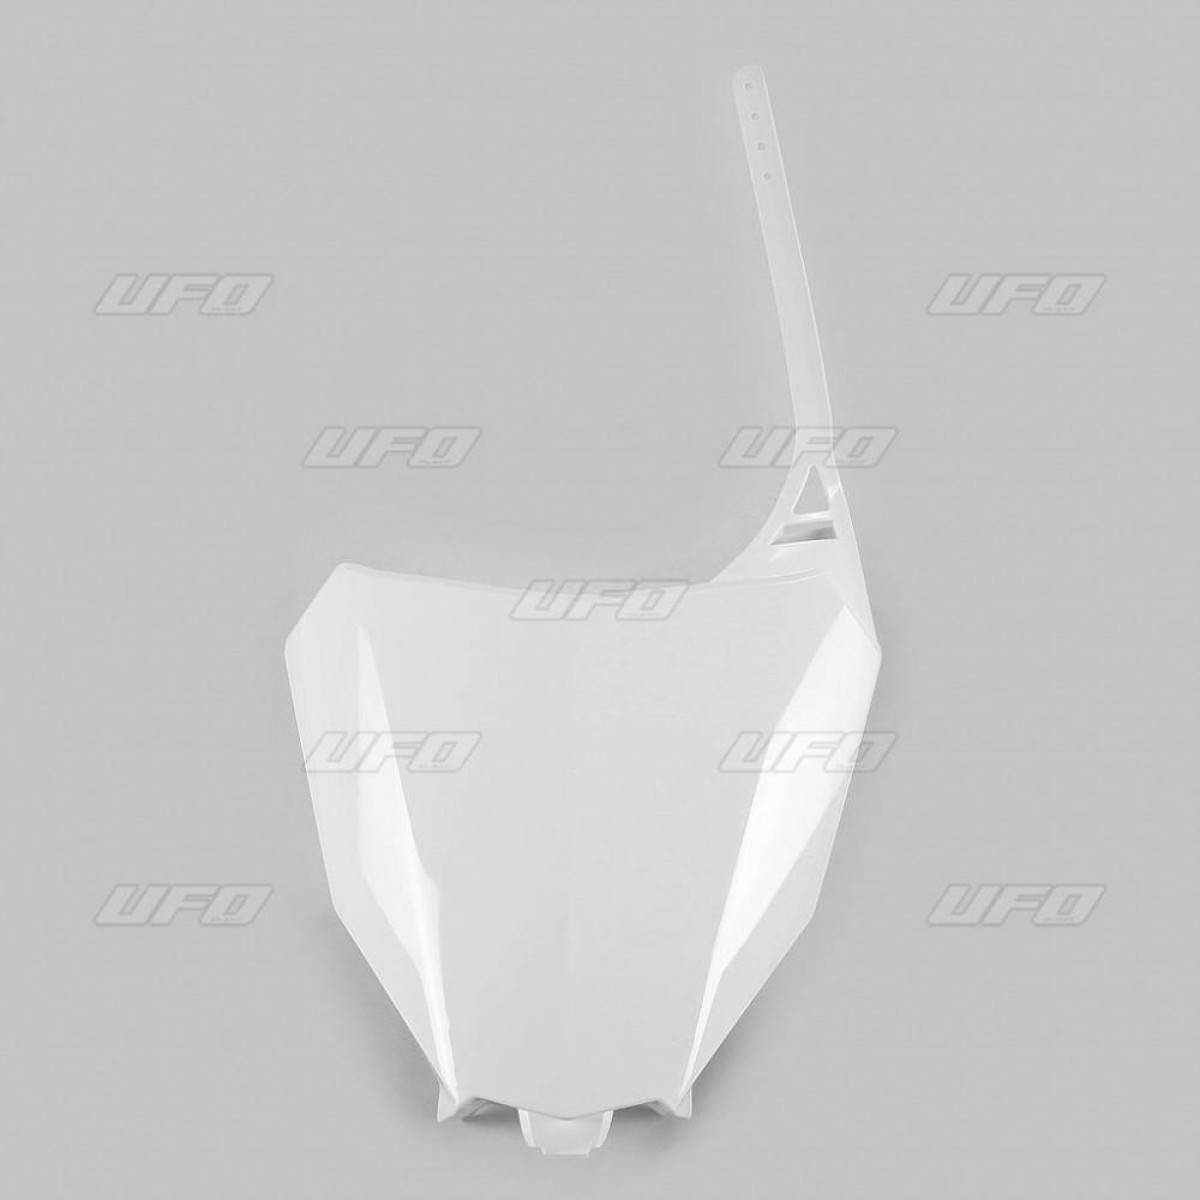 Plastic Numar Fata Honda Crf450r-450rx -17/18,alb